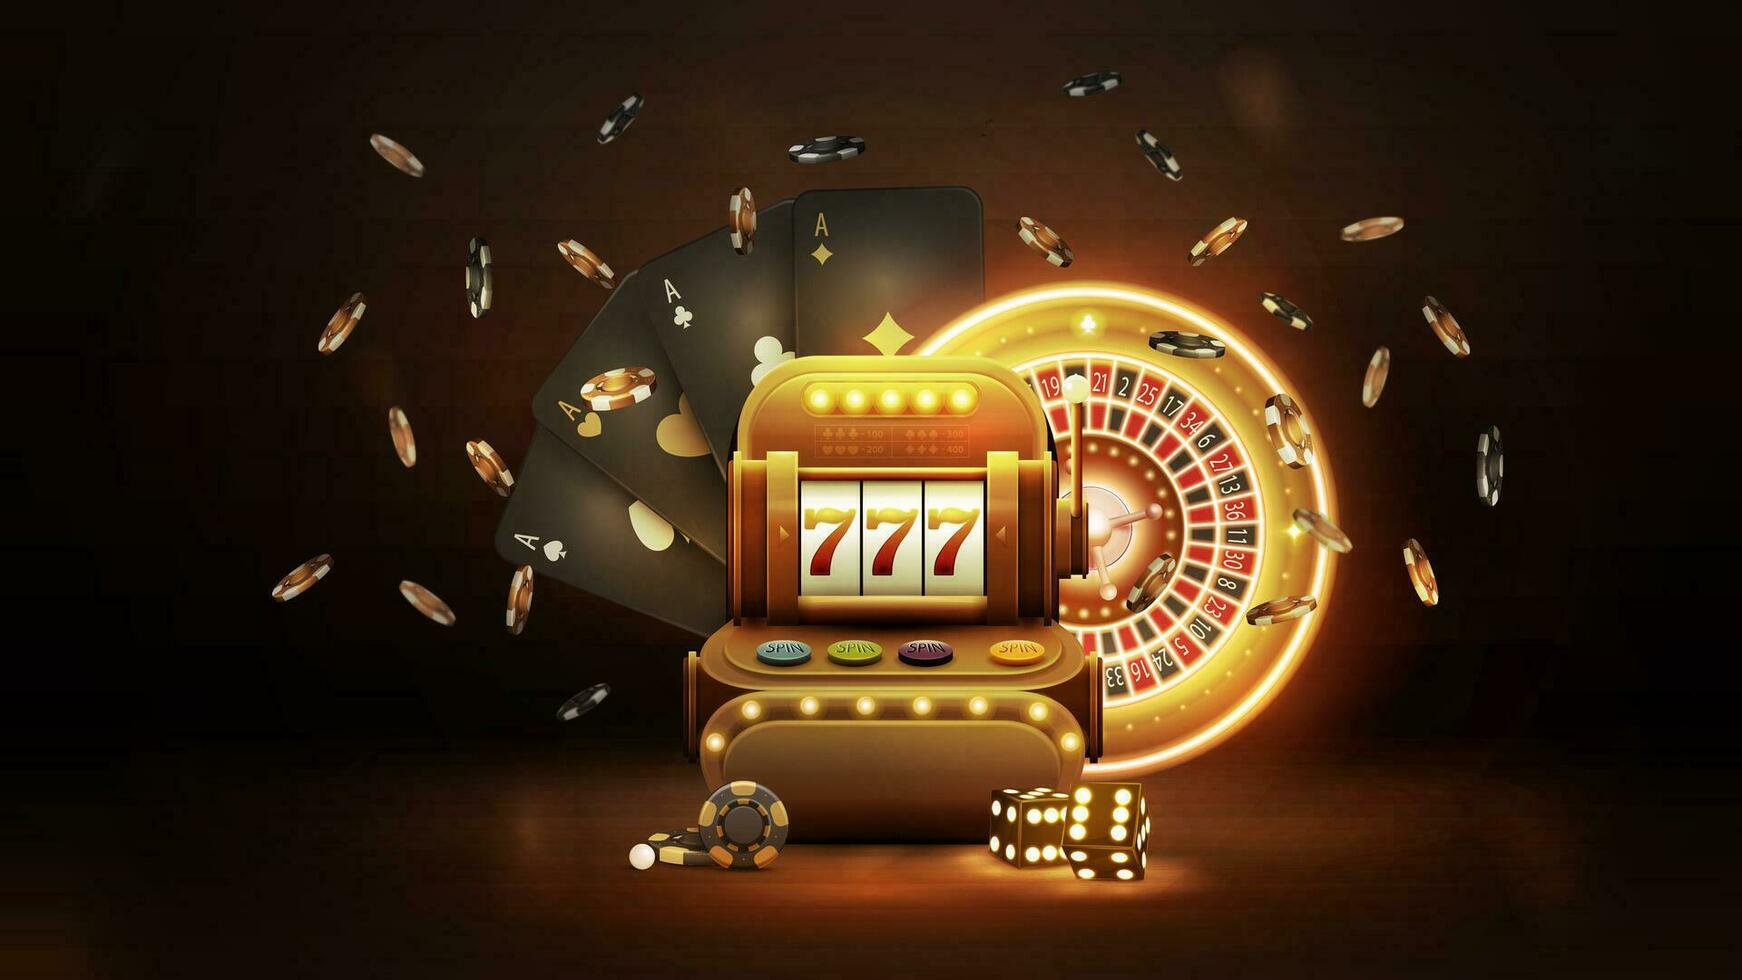 Gold Kasino Slot Maschine mit schwarz spielen Karten, Neon- Gold Roulette, Würfel und Chips im dunkel Szene. Kasino Hintergrund zum Ihre Kunst vektor